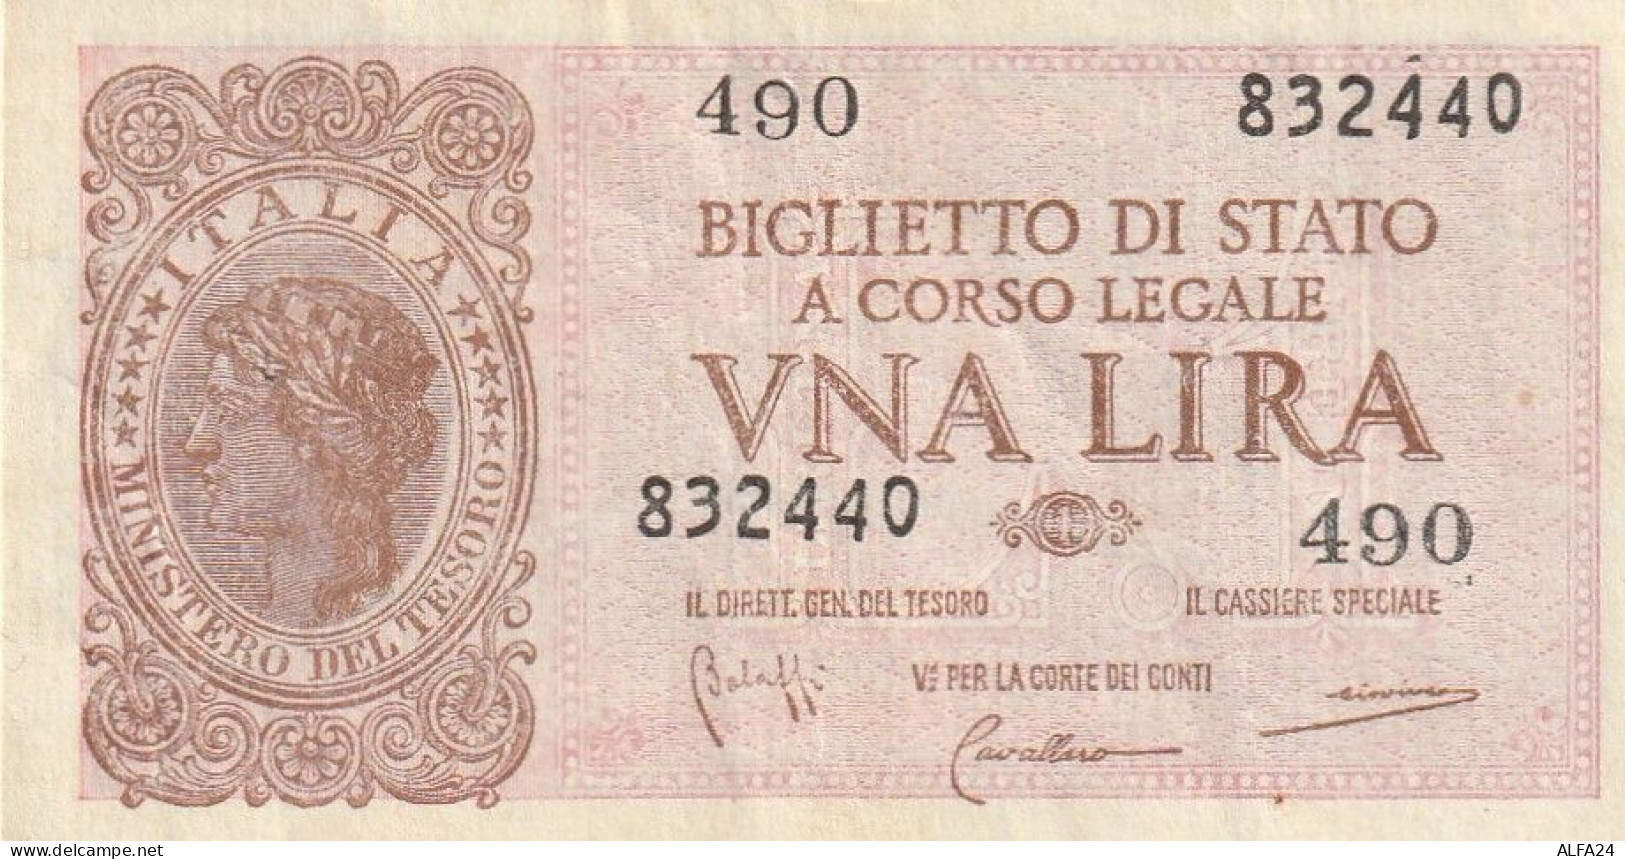 BANCONOTA BIGLIETTO DI STATO ITALIA 1 LIRA VF  (B_350 - Italia – 1 Lira